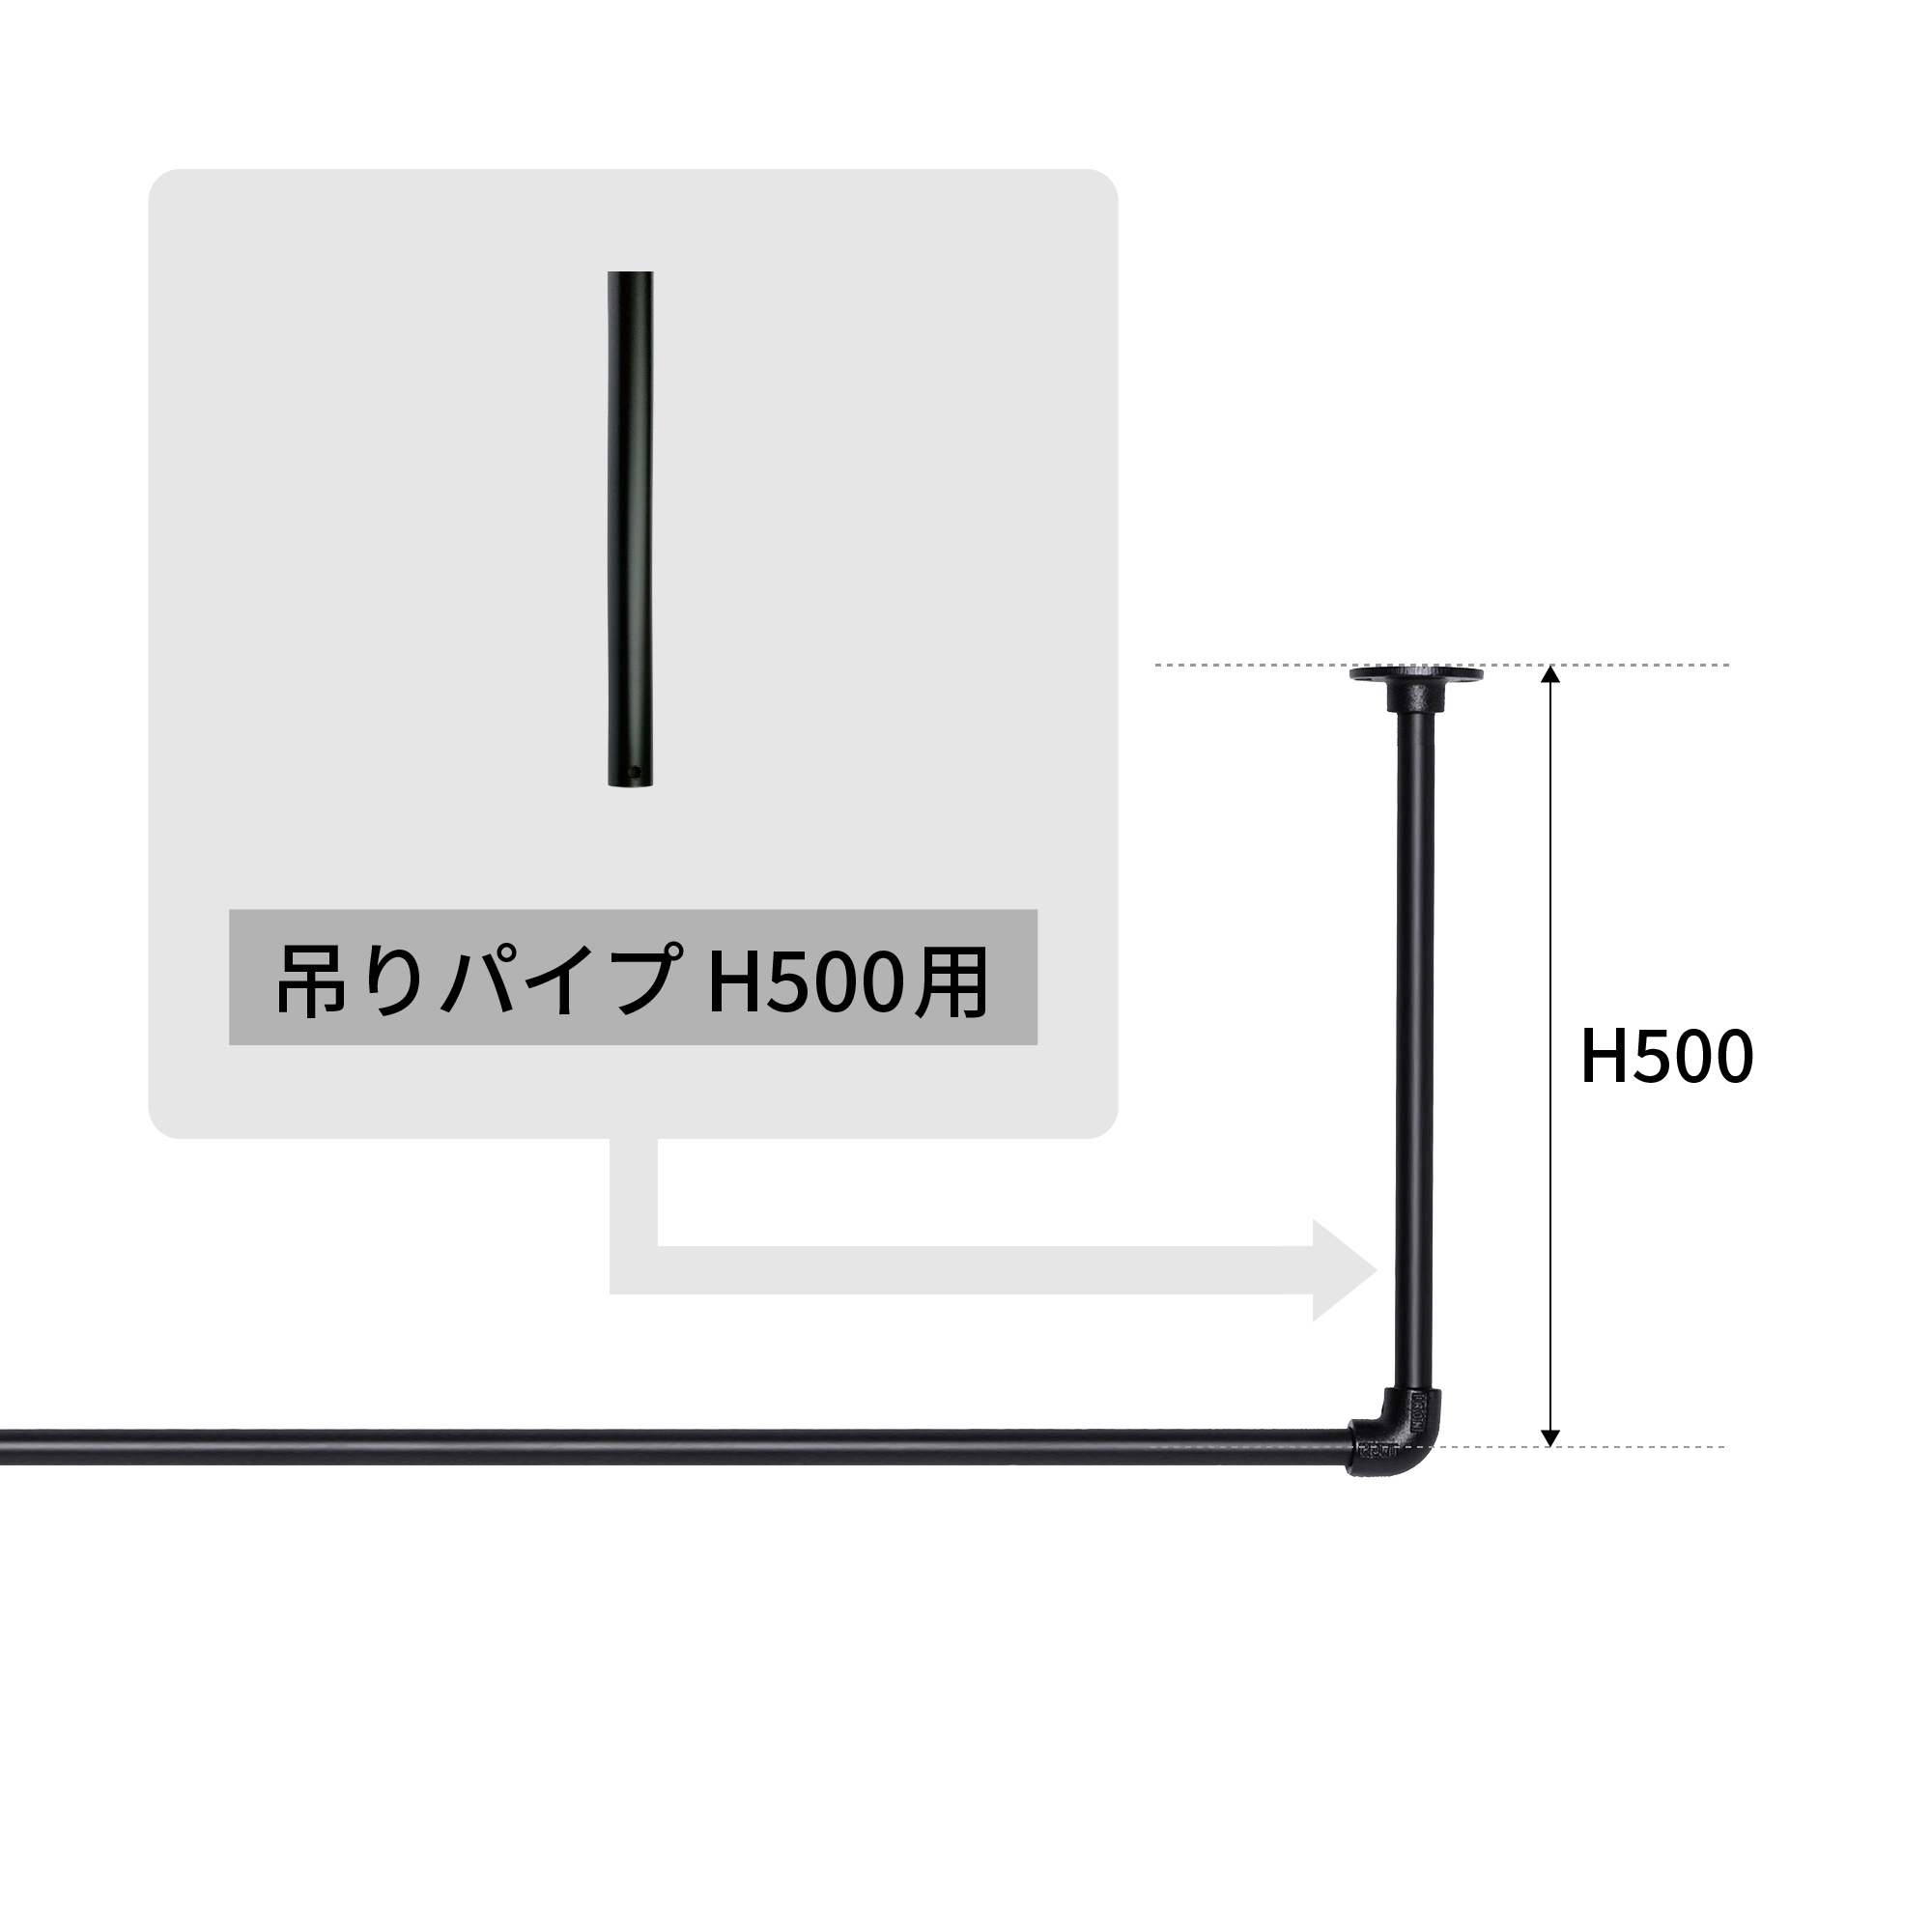 アイアンハンガーパイプ 吊りパイプ H500用 ホワイト PS-HB008-32-G141